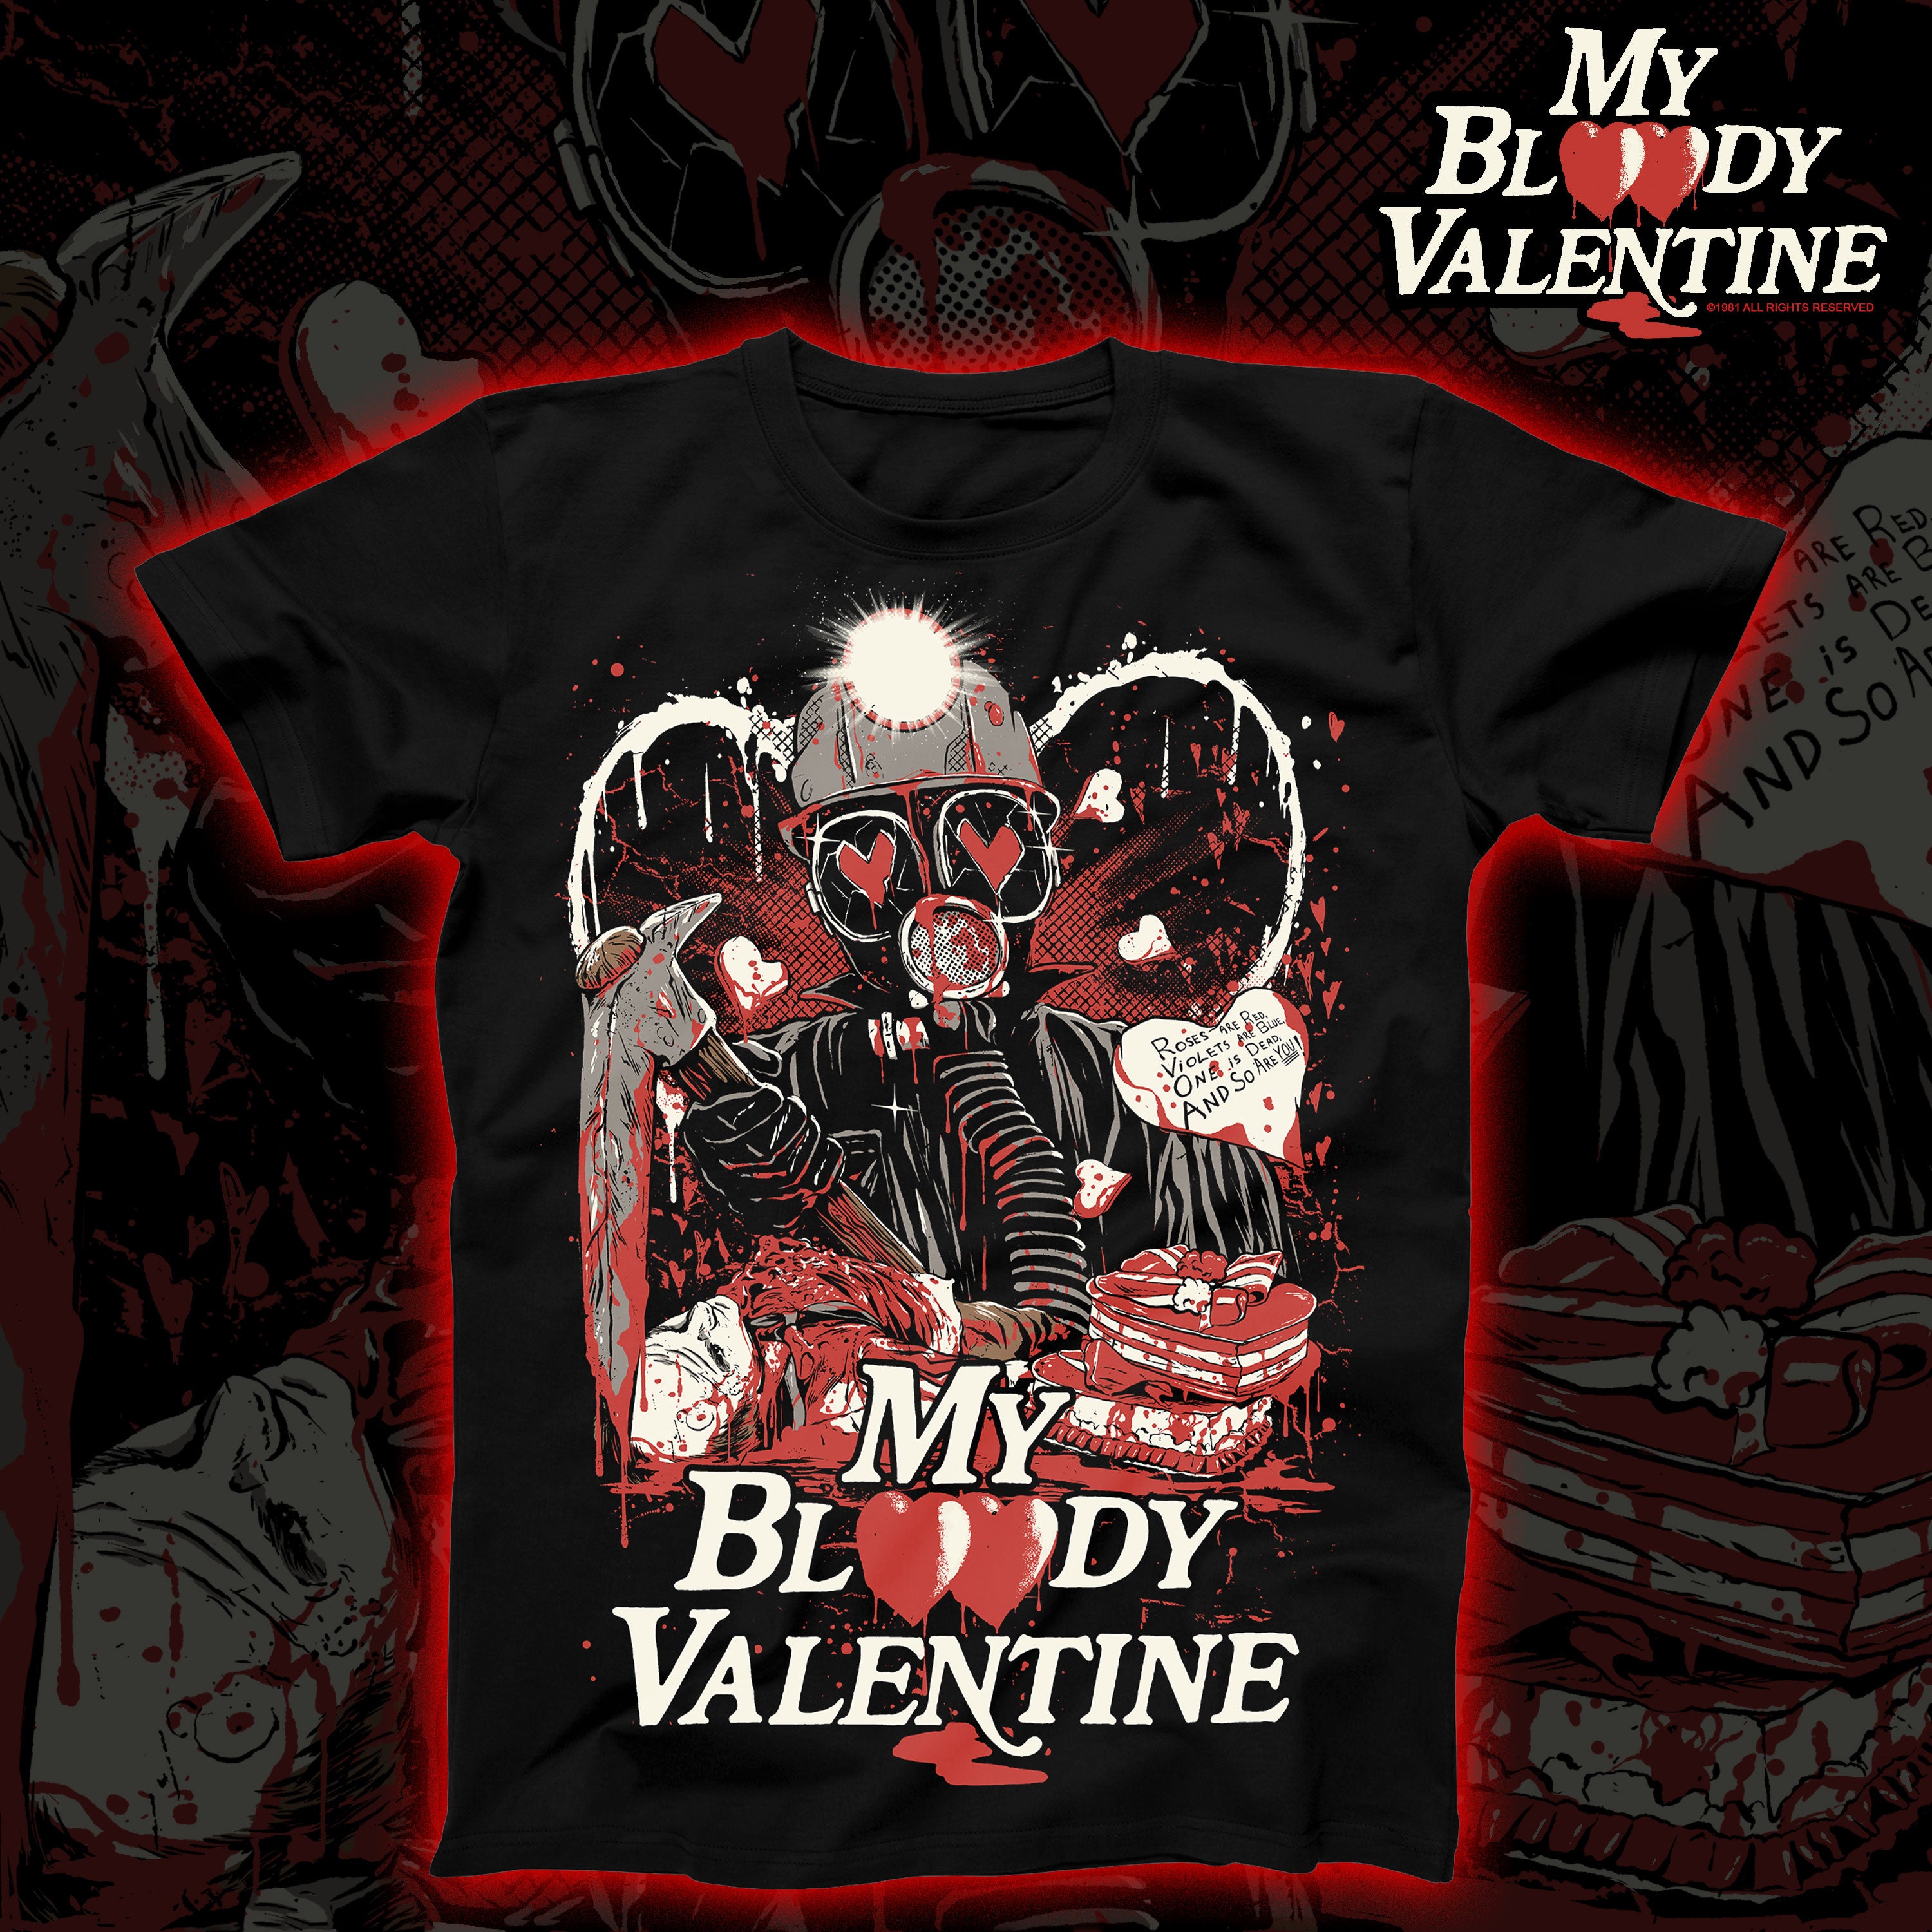 My Bloody Valentine "Beware" Regular tee